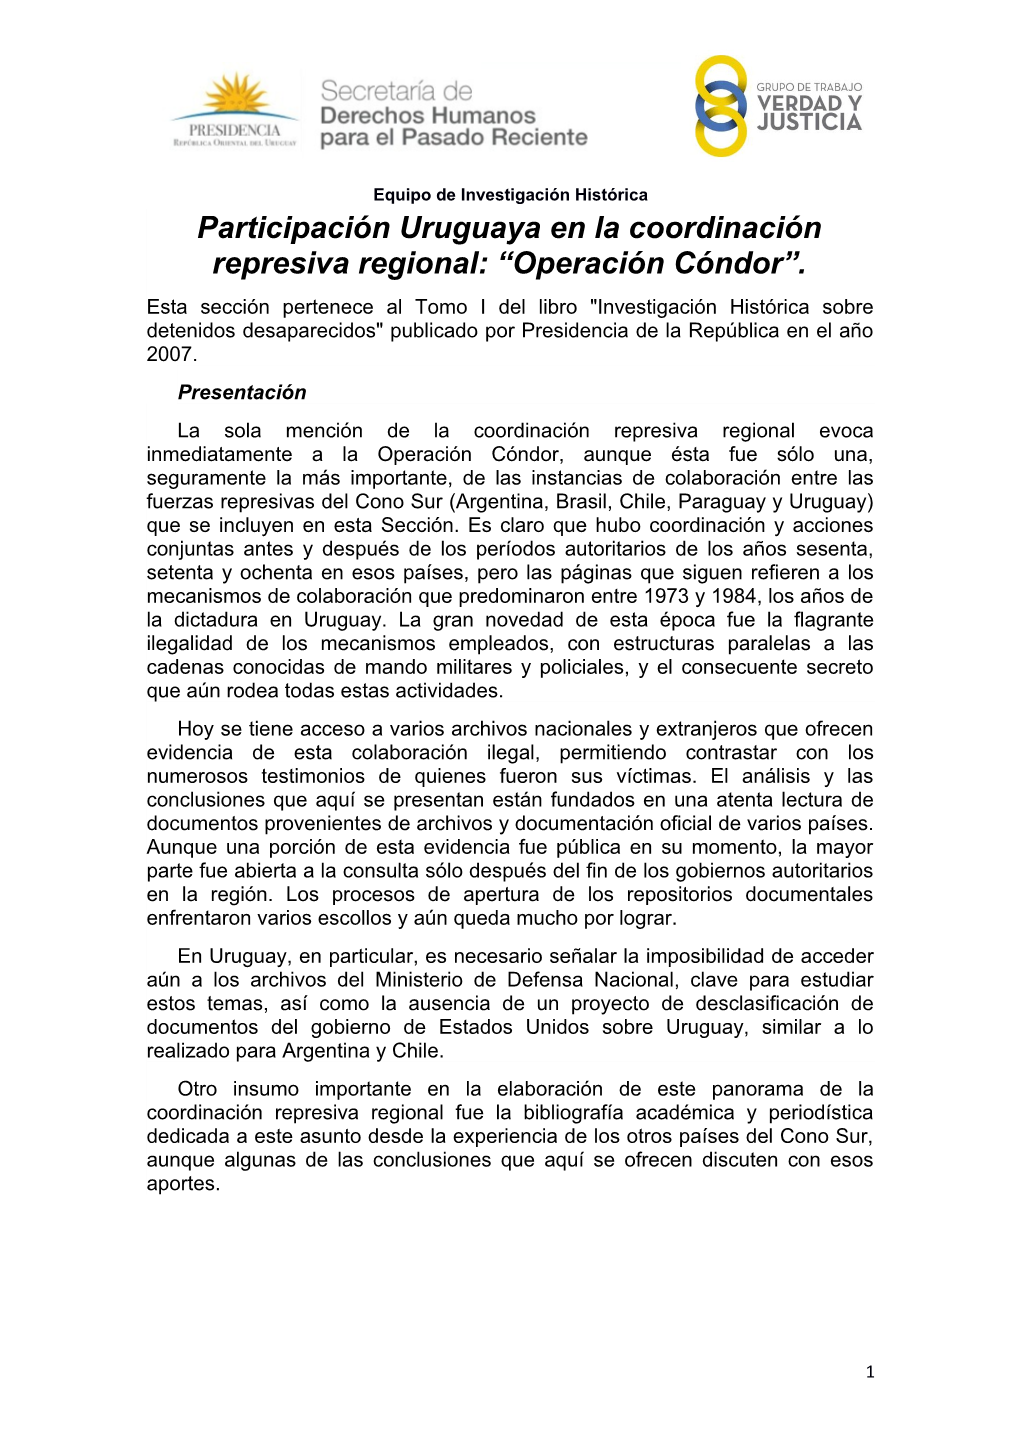 Participación Uruguaya En La Coordinación Represiva Regional: “Operación Cóndor”